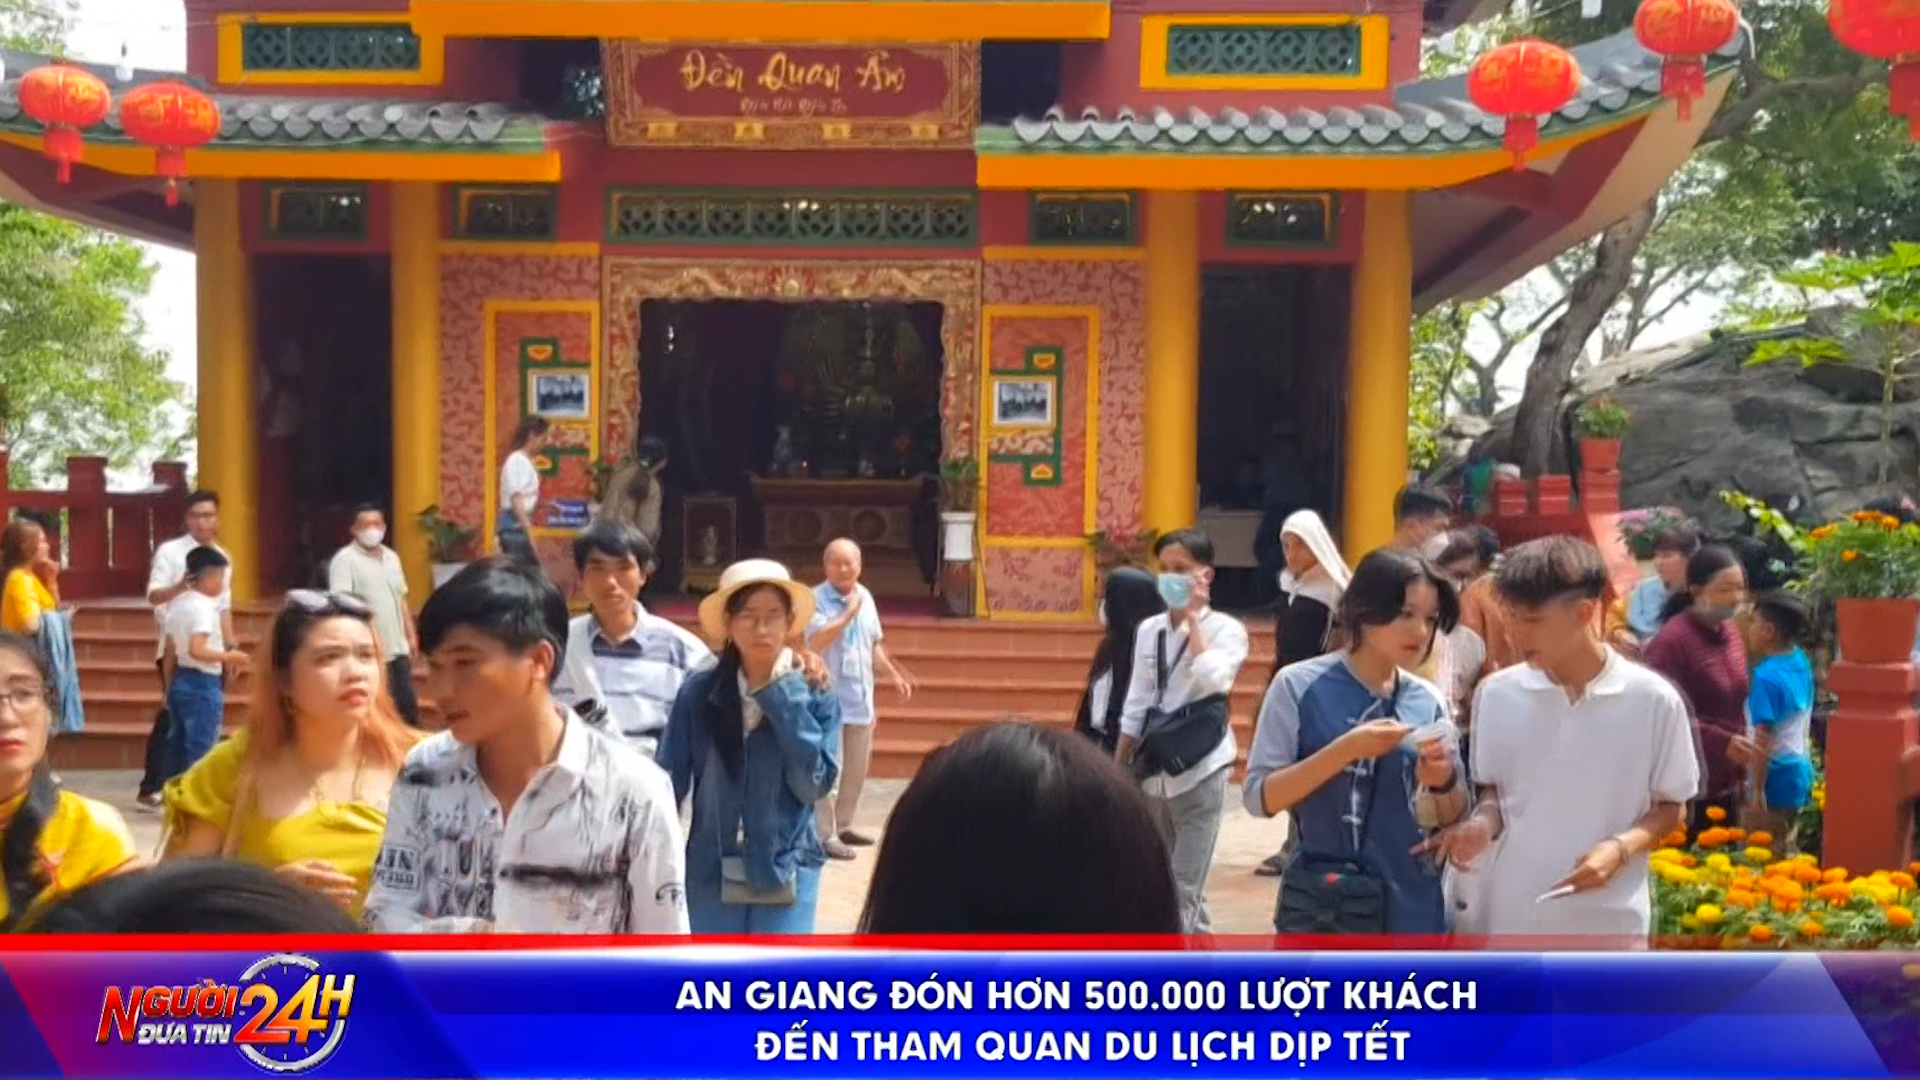 <strong>An Giang đón hơn 500.000 lượt khách đến tham quan du lịch dịp Tết</strong>